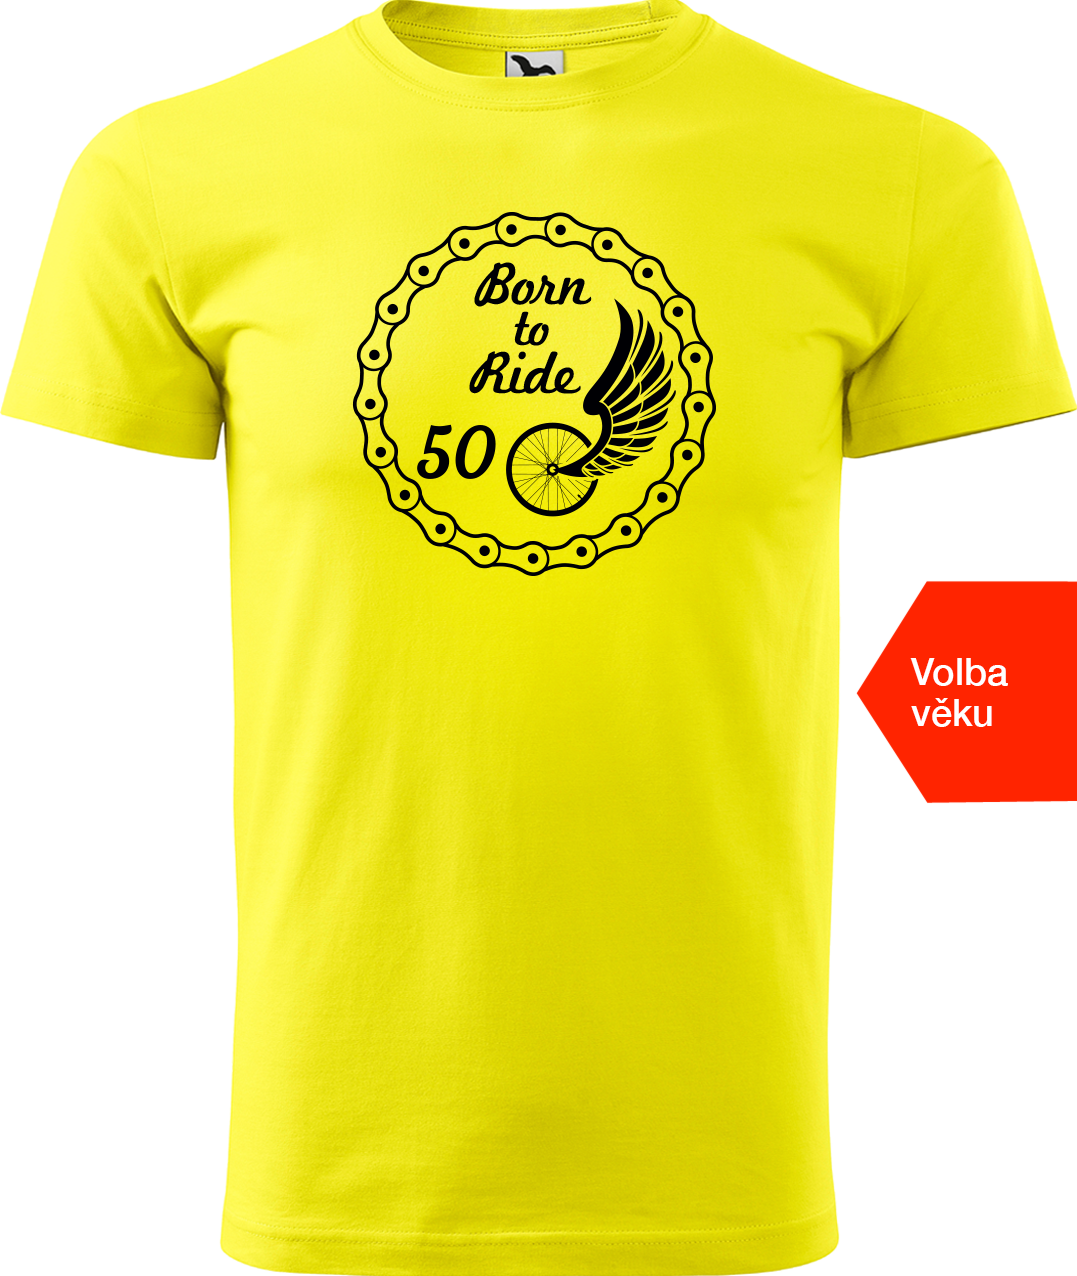 Pánské tričko pro cyklistu s věkem - Born to Ride (wings) Velikost: L, Barva: Žlutá (04)